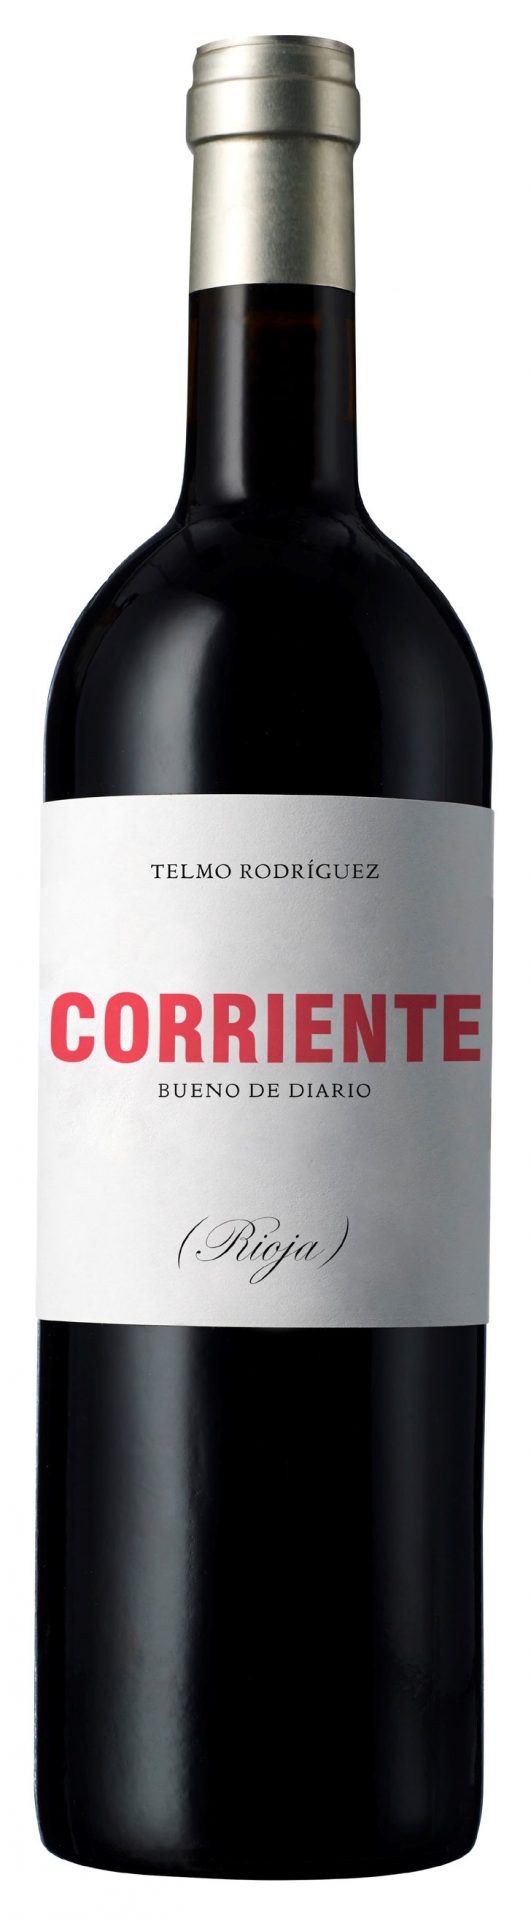 Wine of the Week: Telmo Rodriguez Corriente 2016